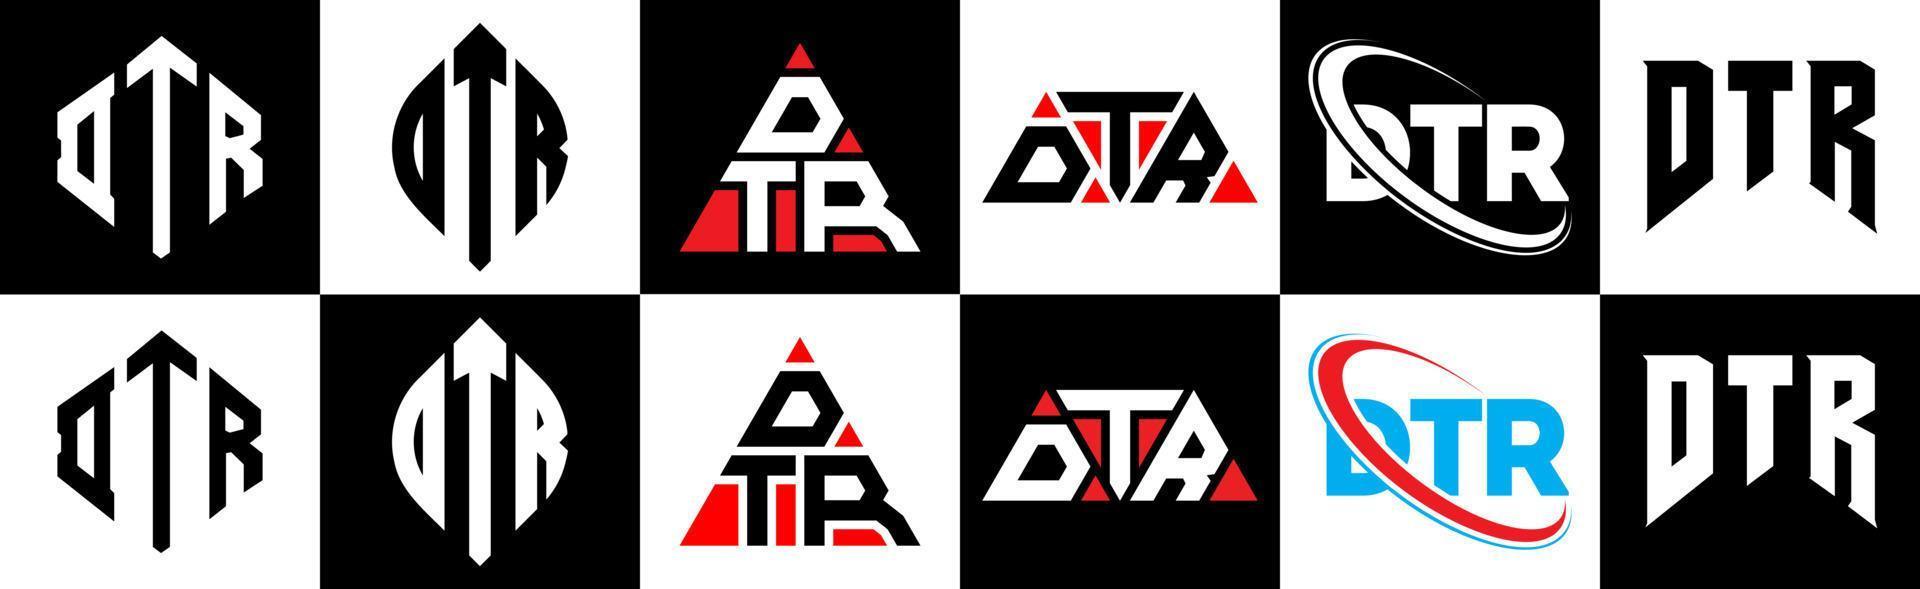 création de logo de lettre dtr en six styles. dtr polygone, cercle, triangle, hexagone, style plat et simple avec logo de lettre de variation de couleur noir et blanc dans un plan de travail. dtr logo minimaliste et classique vecteur